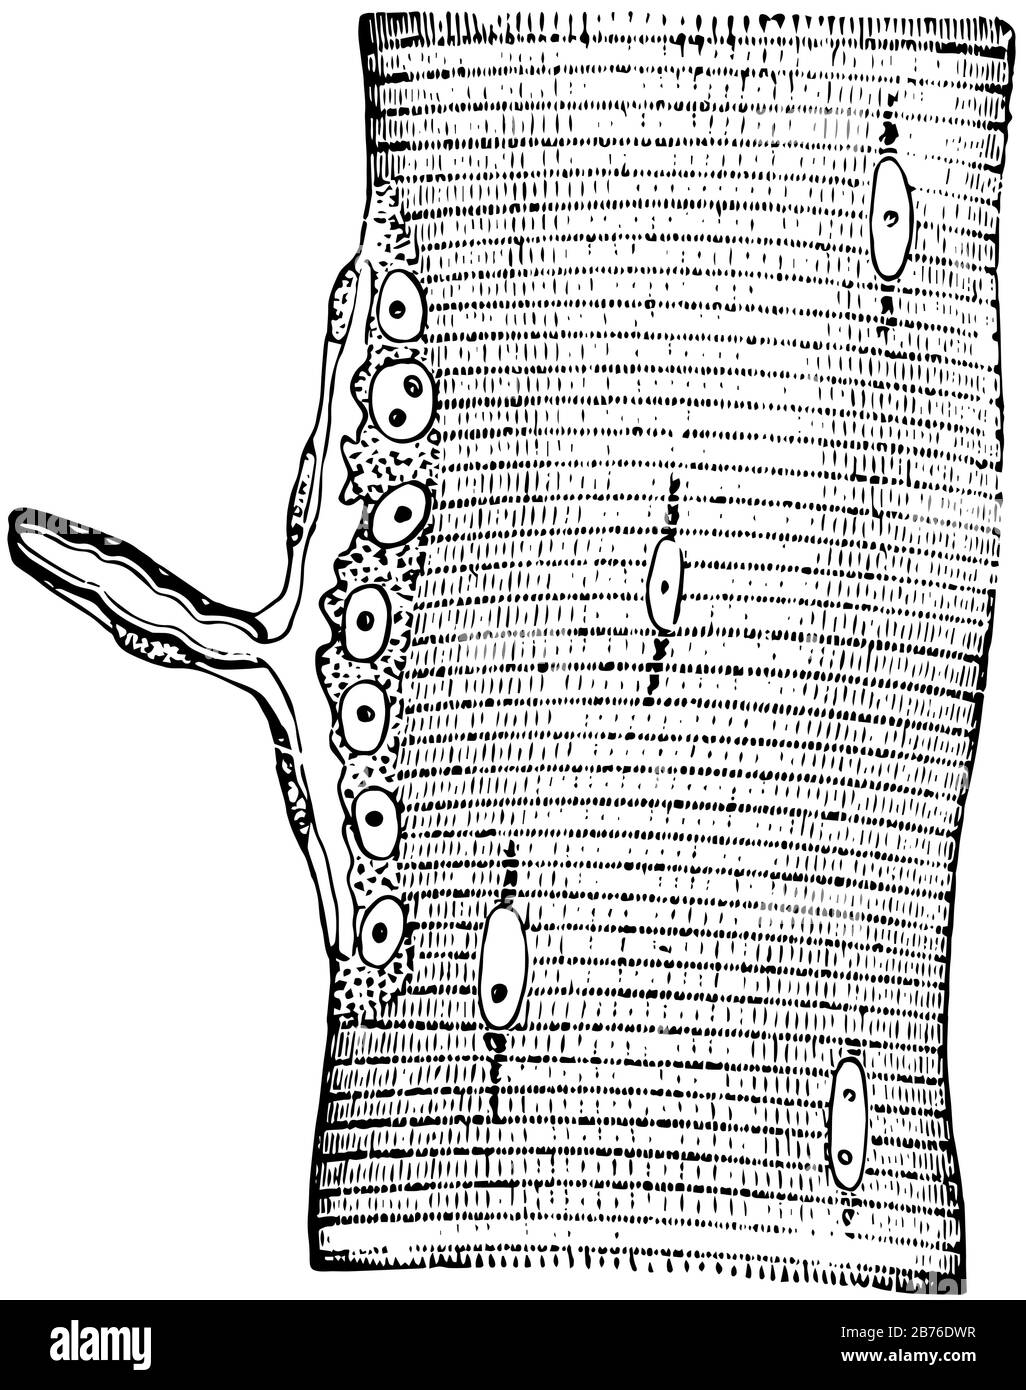 Il nervo che termina in fibra muscolare di una lucertola e l'estremità-piastra o l'estremità motoriale dell'axone è visto lateralmente, linea vintage disegno o incisione illus Illustrazione Vettoriale